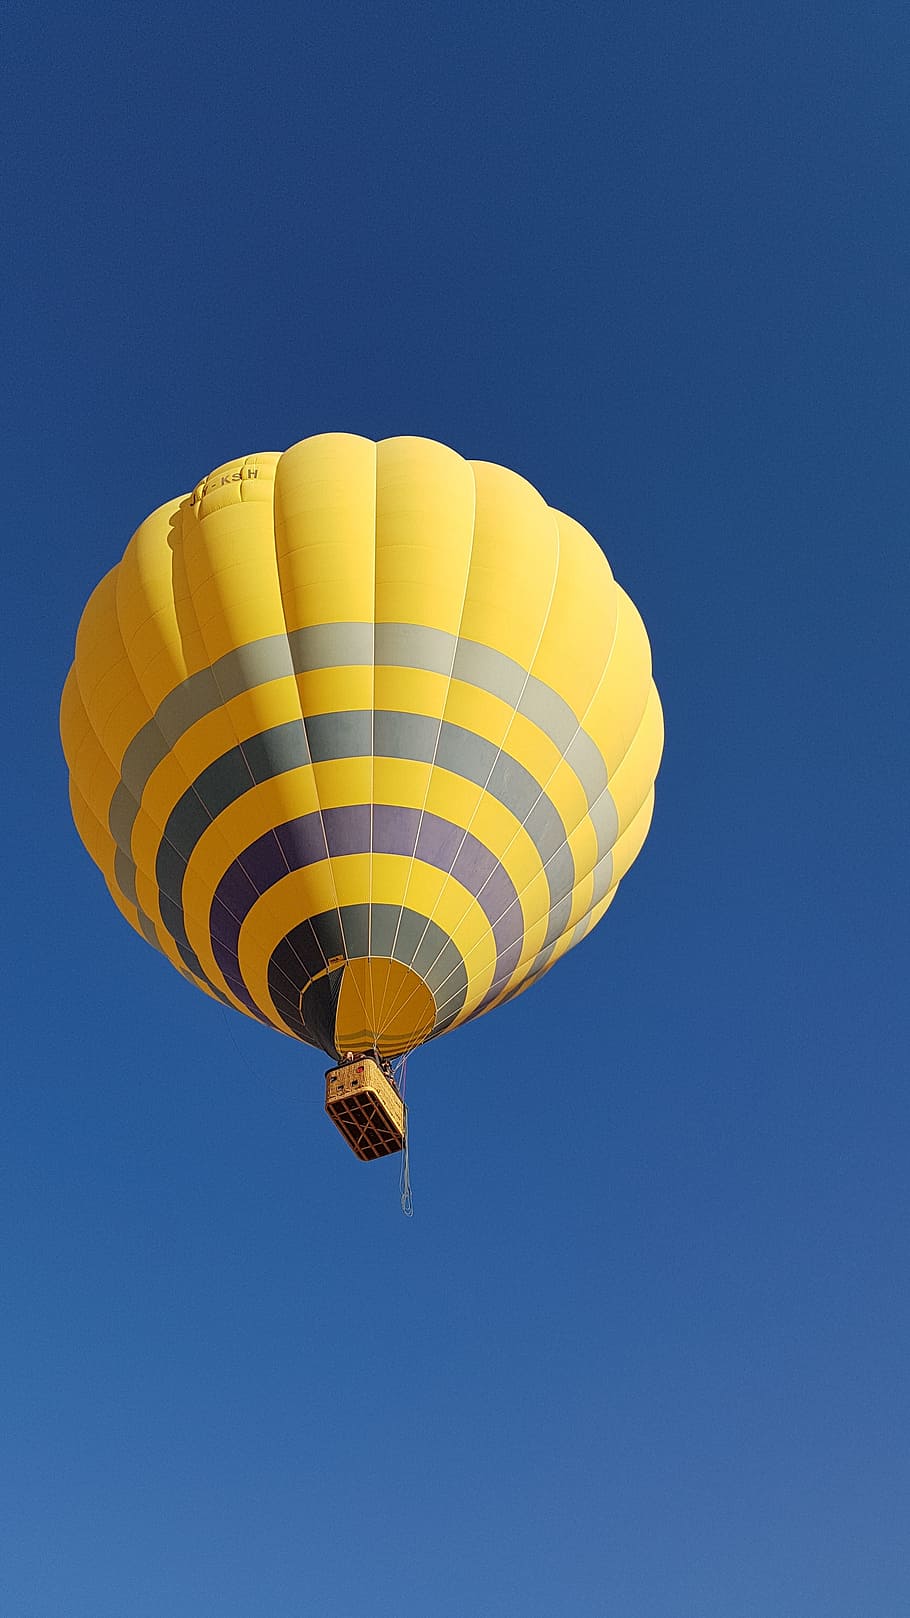 globo, aire, cielo, paracaídas, globo aerostático, aventura, vuelo, deportes extremos, vista de ángulo bajo, en el aire